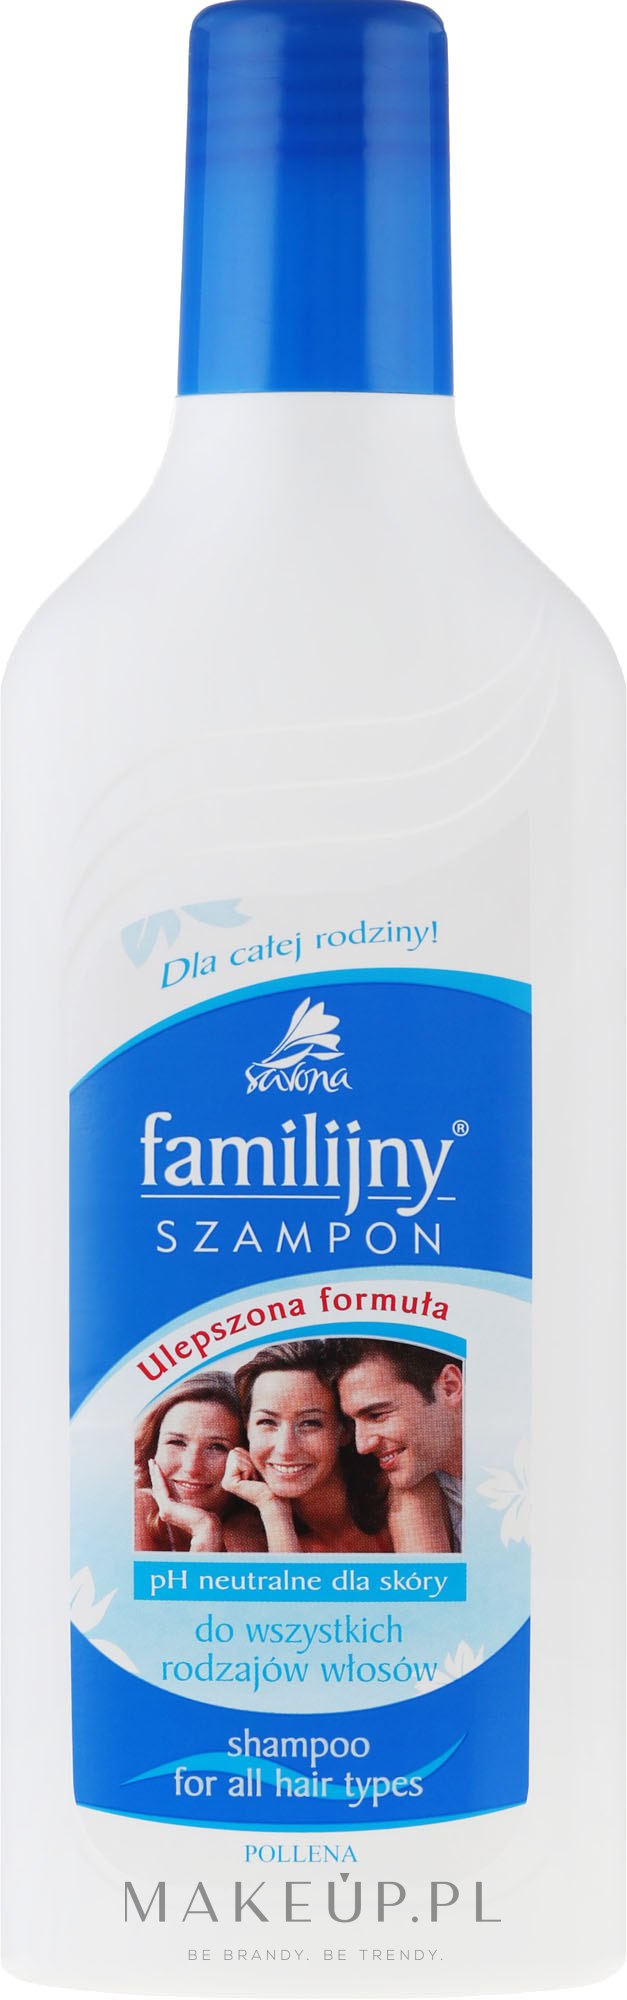 Wzmacniający szampon do wszystkich rodzajów włosów - Pollena Savona Familijny Shampoo — Zdjęcie 500 ml